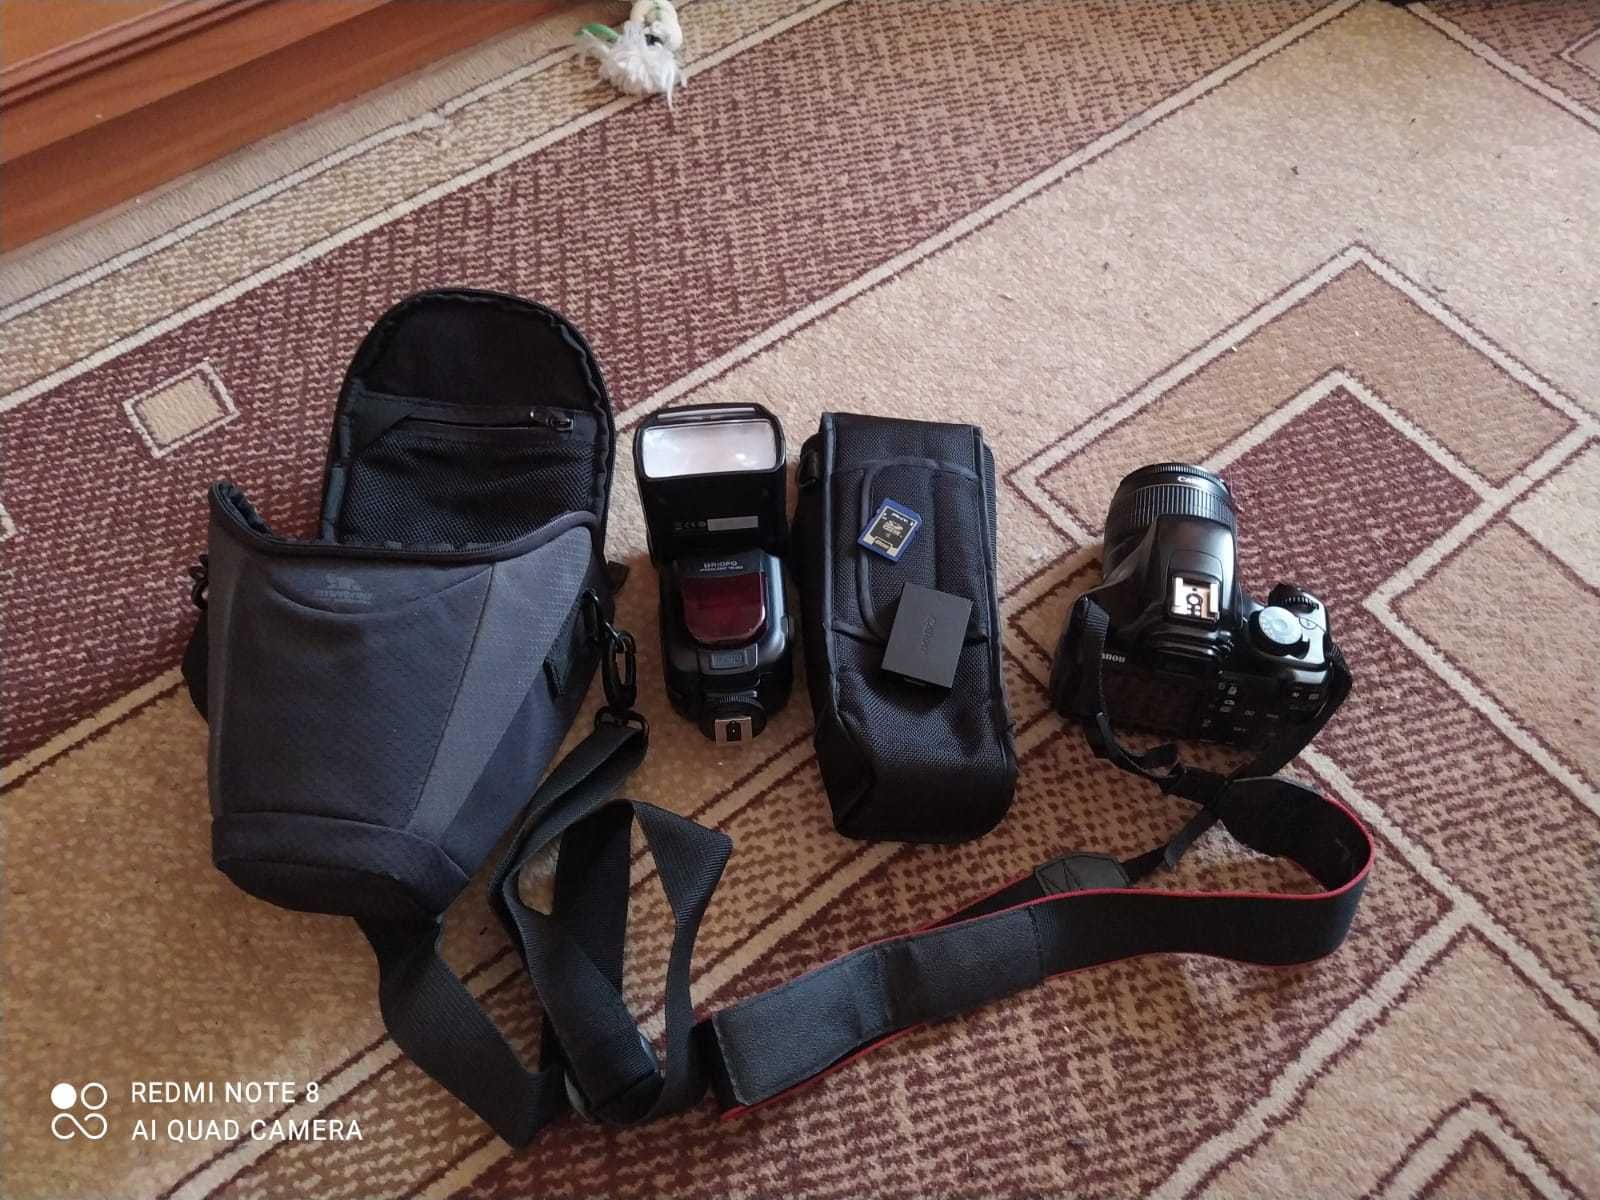 LC-E8, LP-E8, EF-S 18-55mm объектив Canon, бат. и зарядка EN-EL15